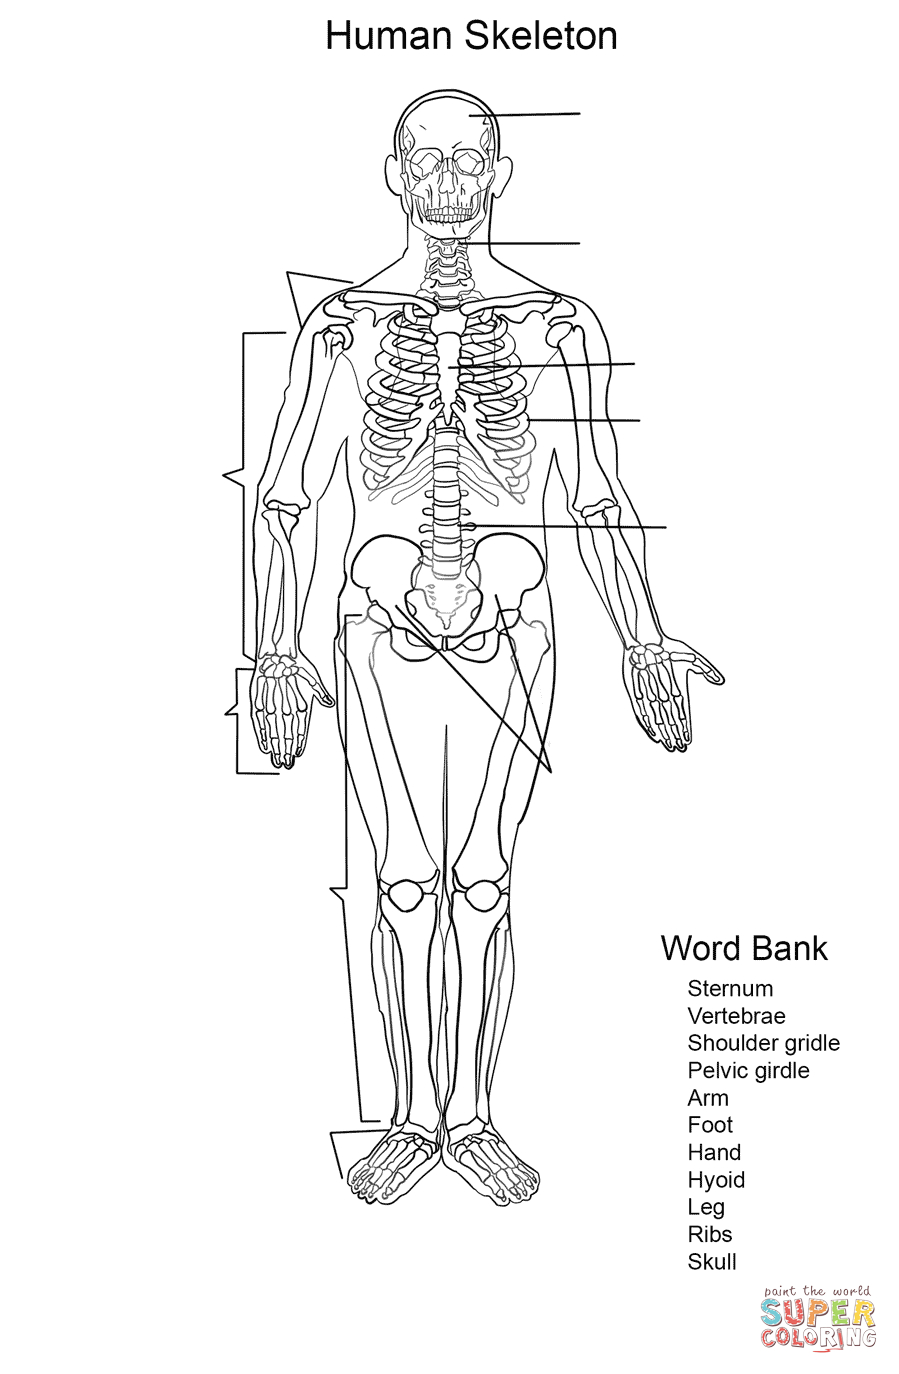 Human Skeleton Coloring Pages Human Skeleton Worksheet Coloring Page Free Printable Coloring Pages